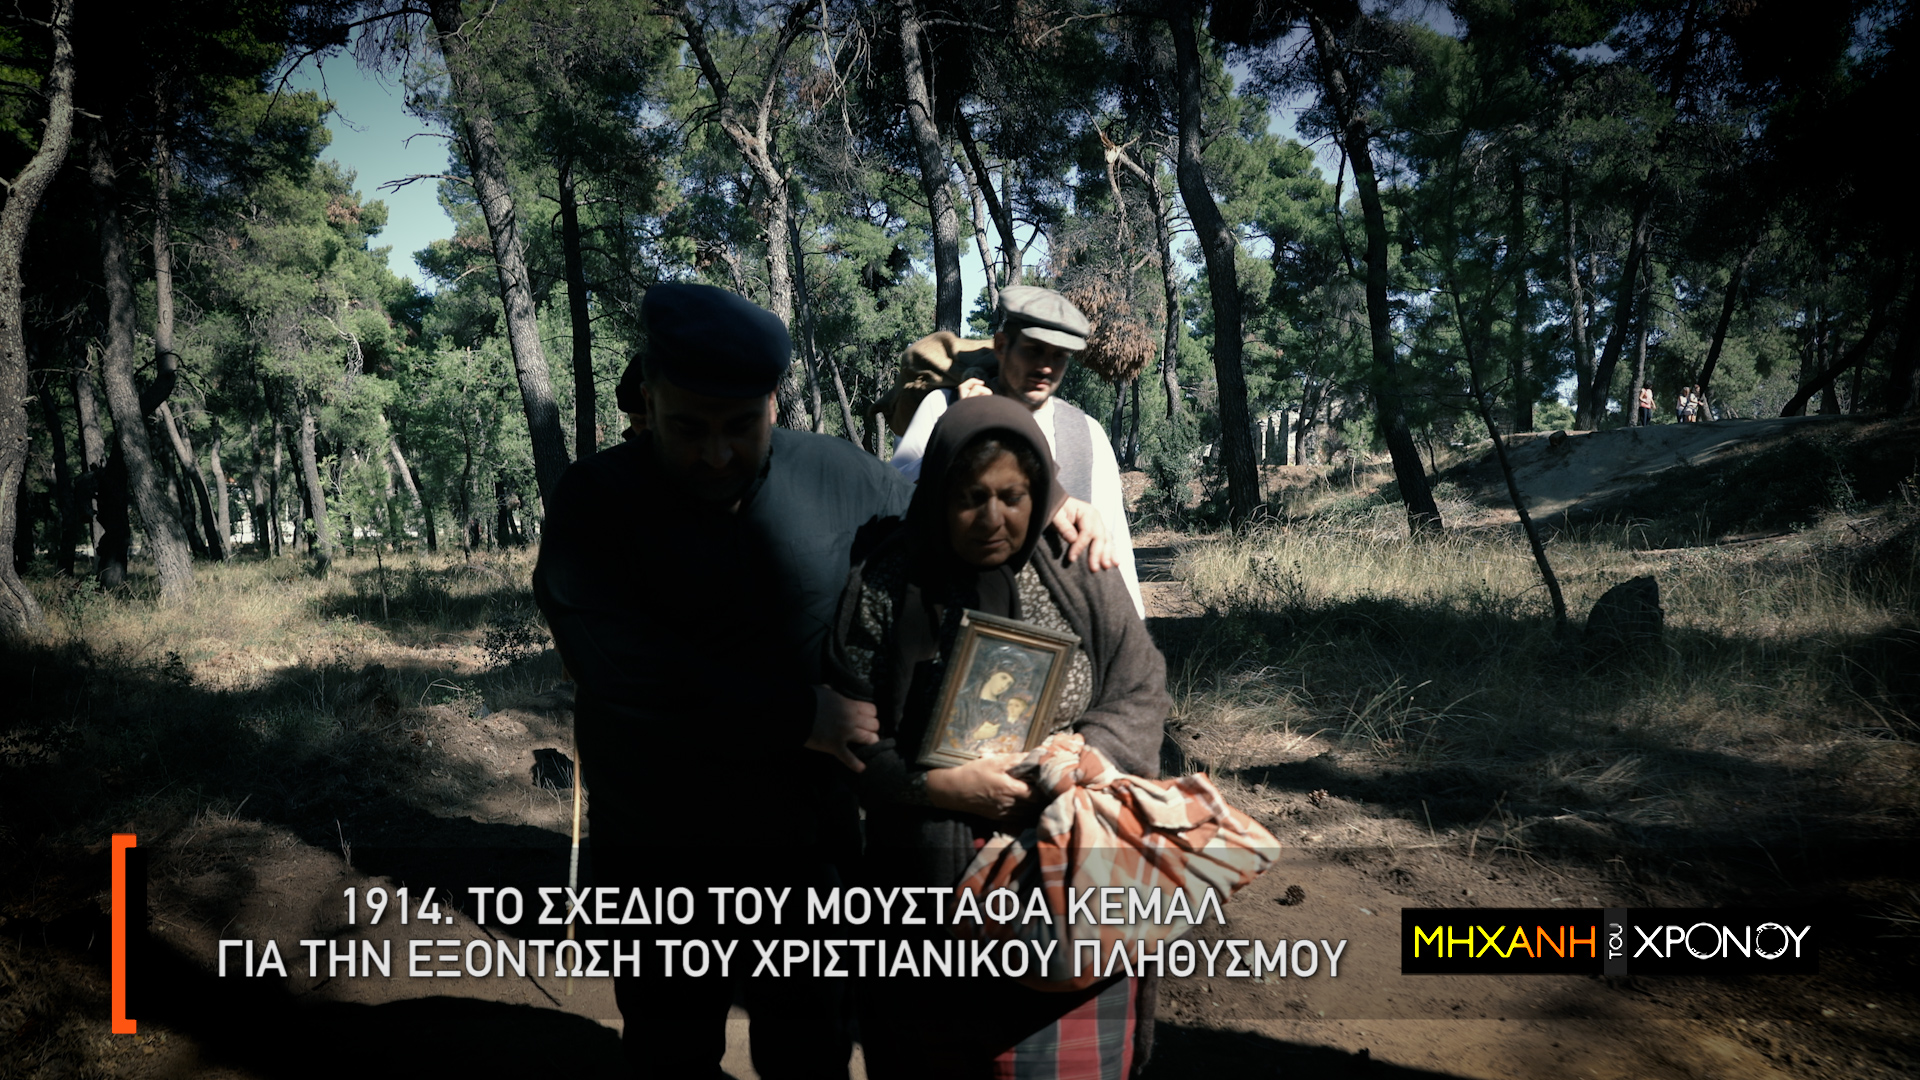 Η εκπομπή περιγράφει την ναυτική οδύσσεια από την Ανατολή προς την Ελλάδα  και τον φόβο των αρχών για ξέσπασμα επιδημιών.